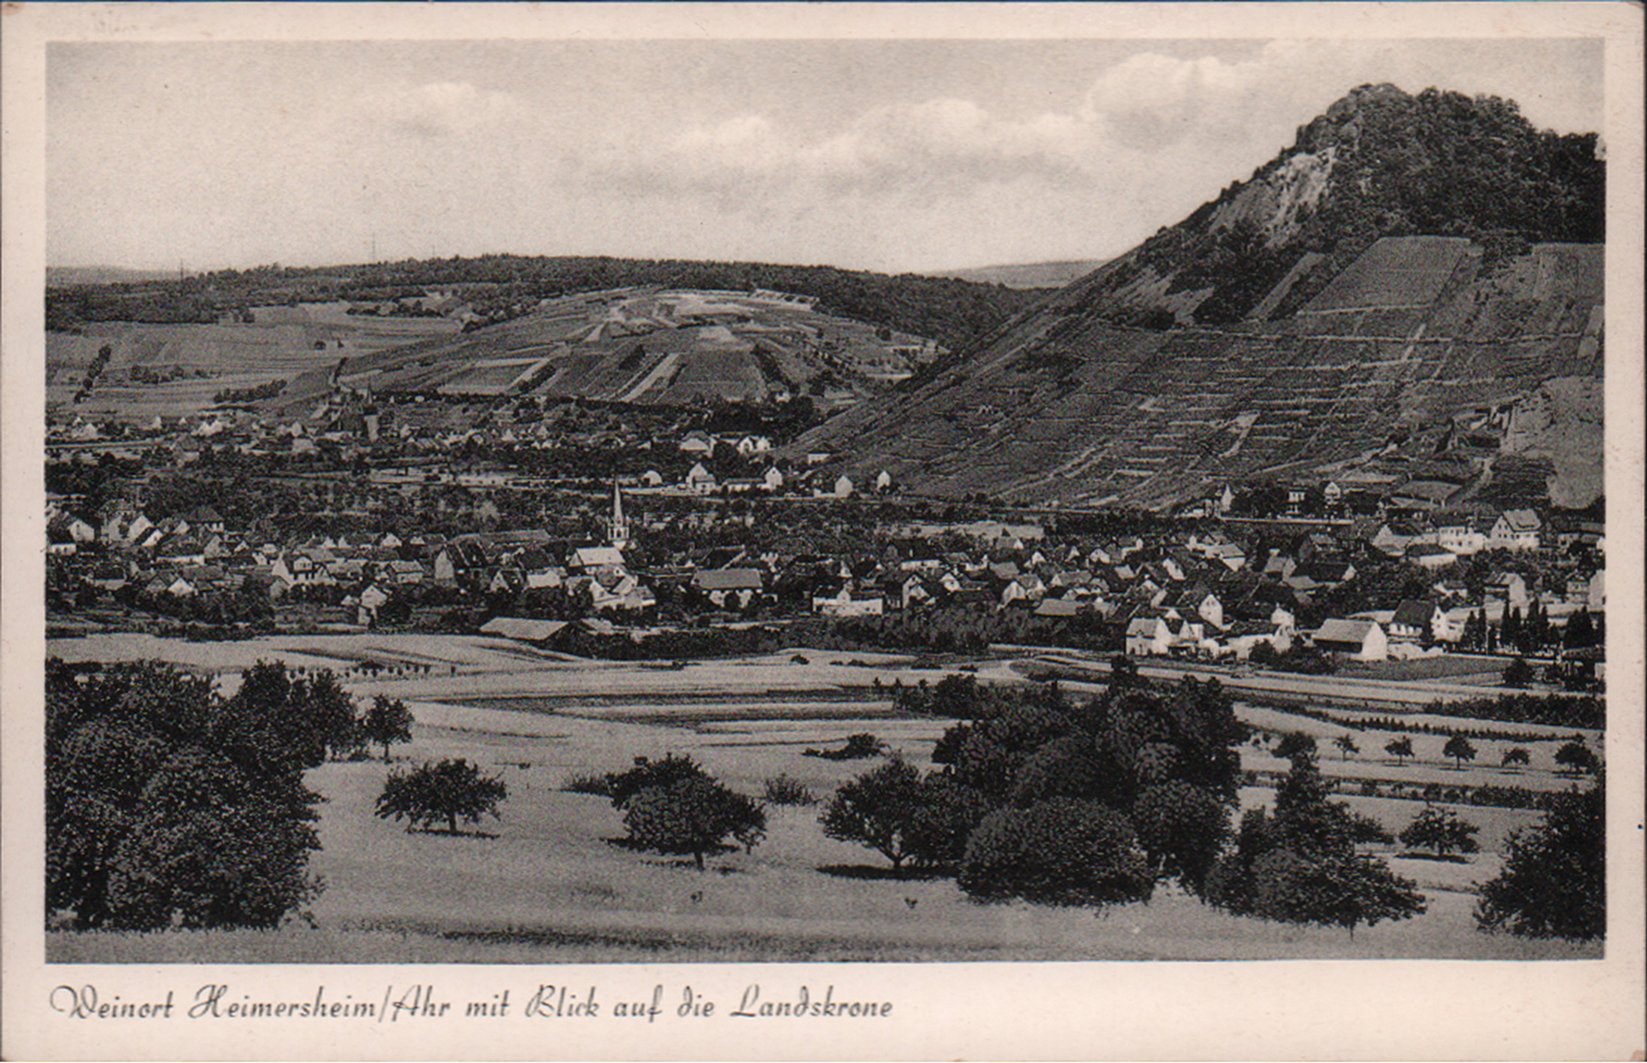 Ansichtskarte Weinort Heimersheim/Ahr mit Blick auf die Landskrone (Jupp Schuld CC BY-NC-SA)